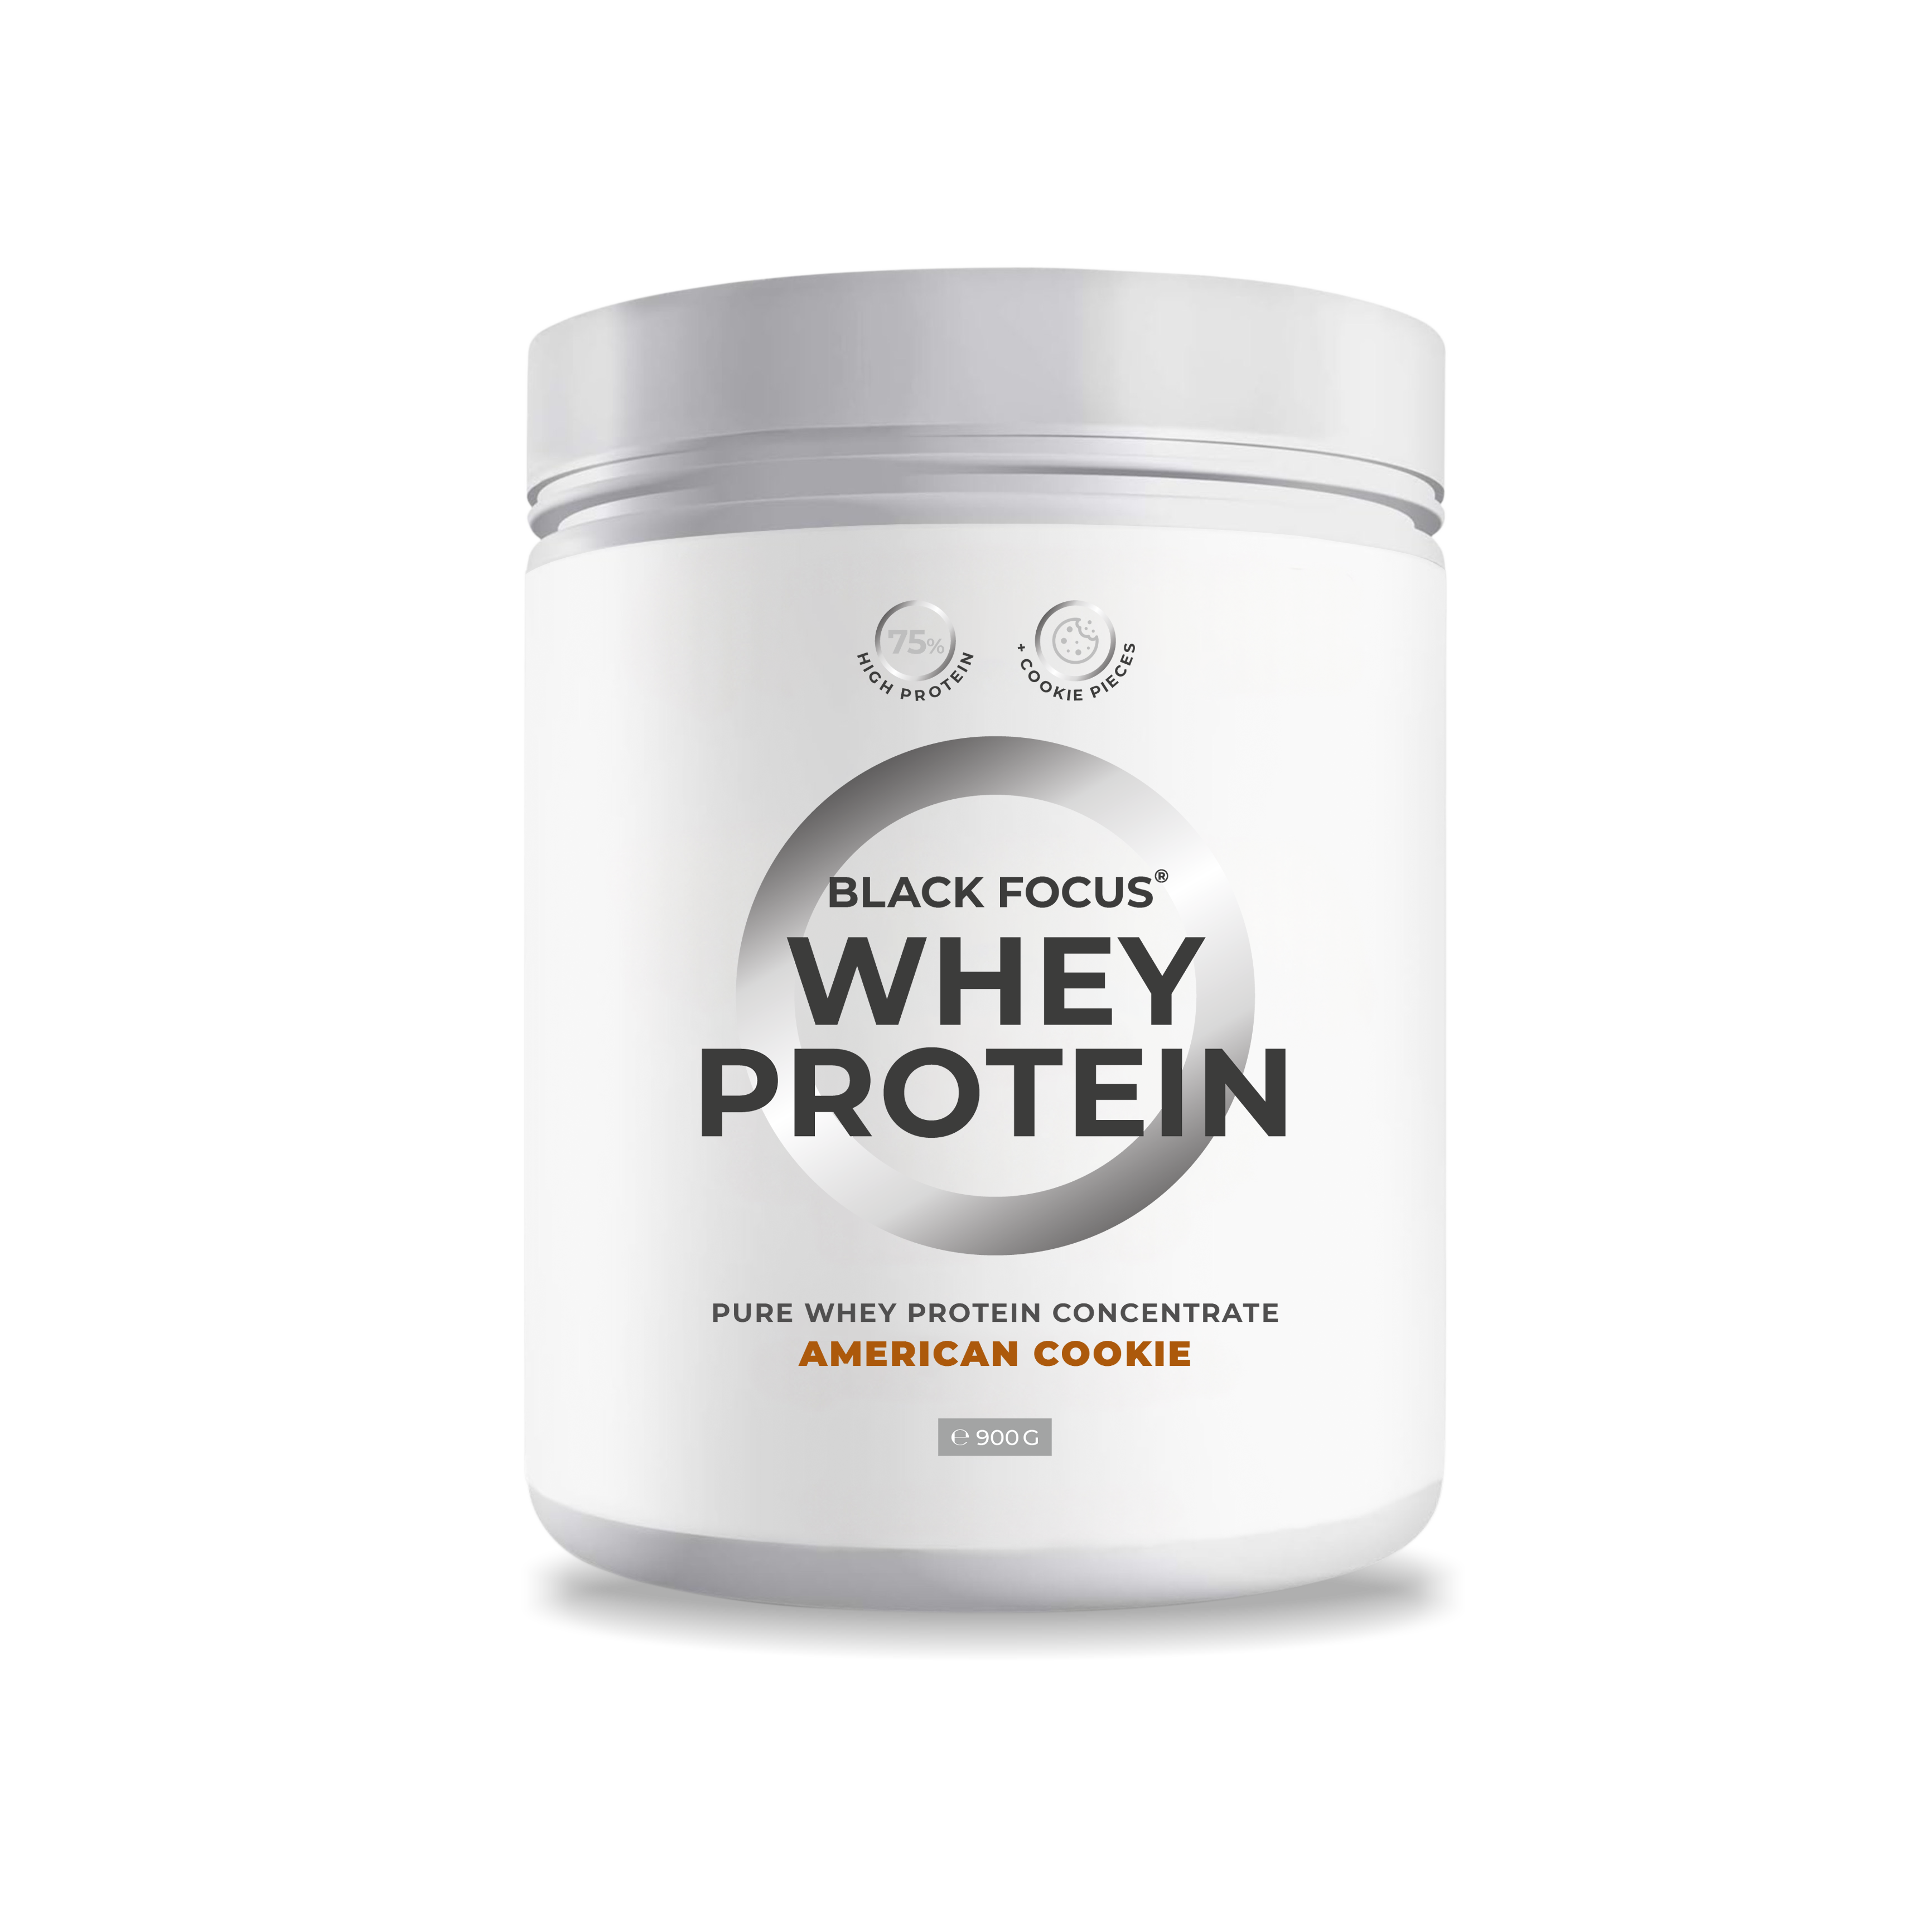 Whey Protein - Concentrato puro di proteine del siero di latte